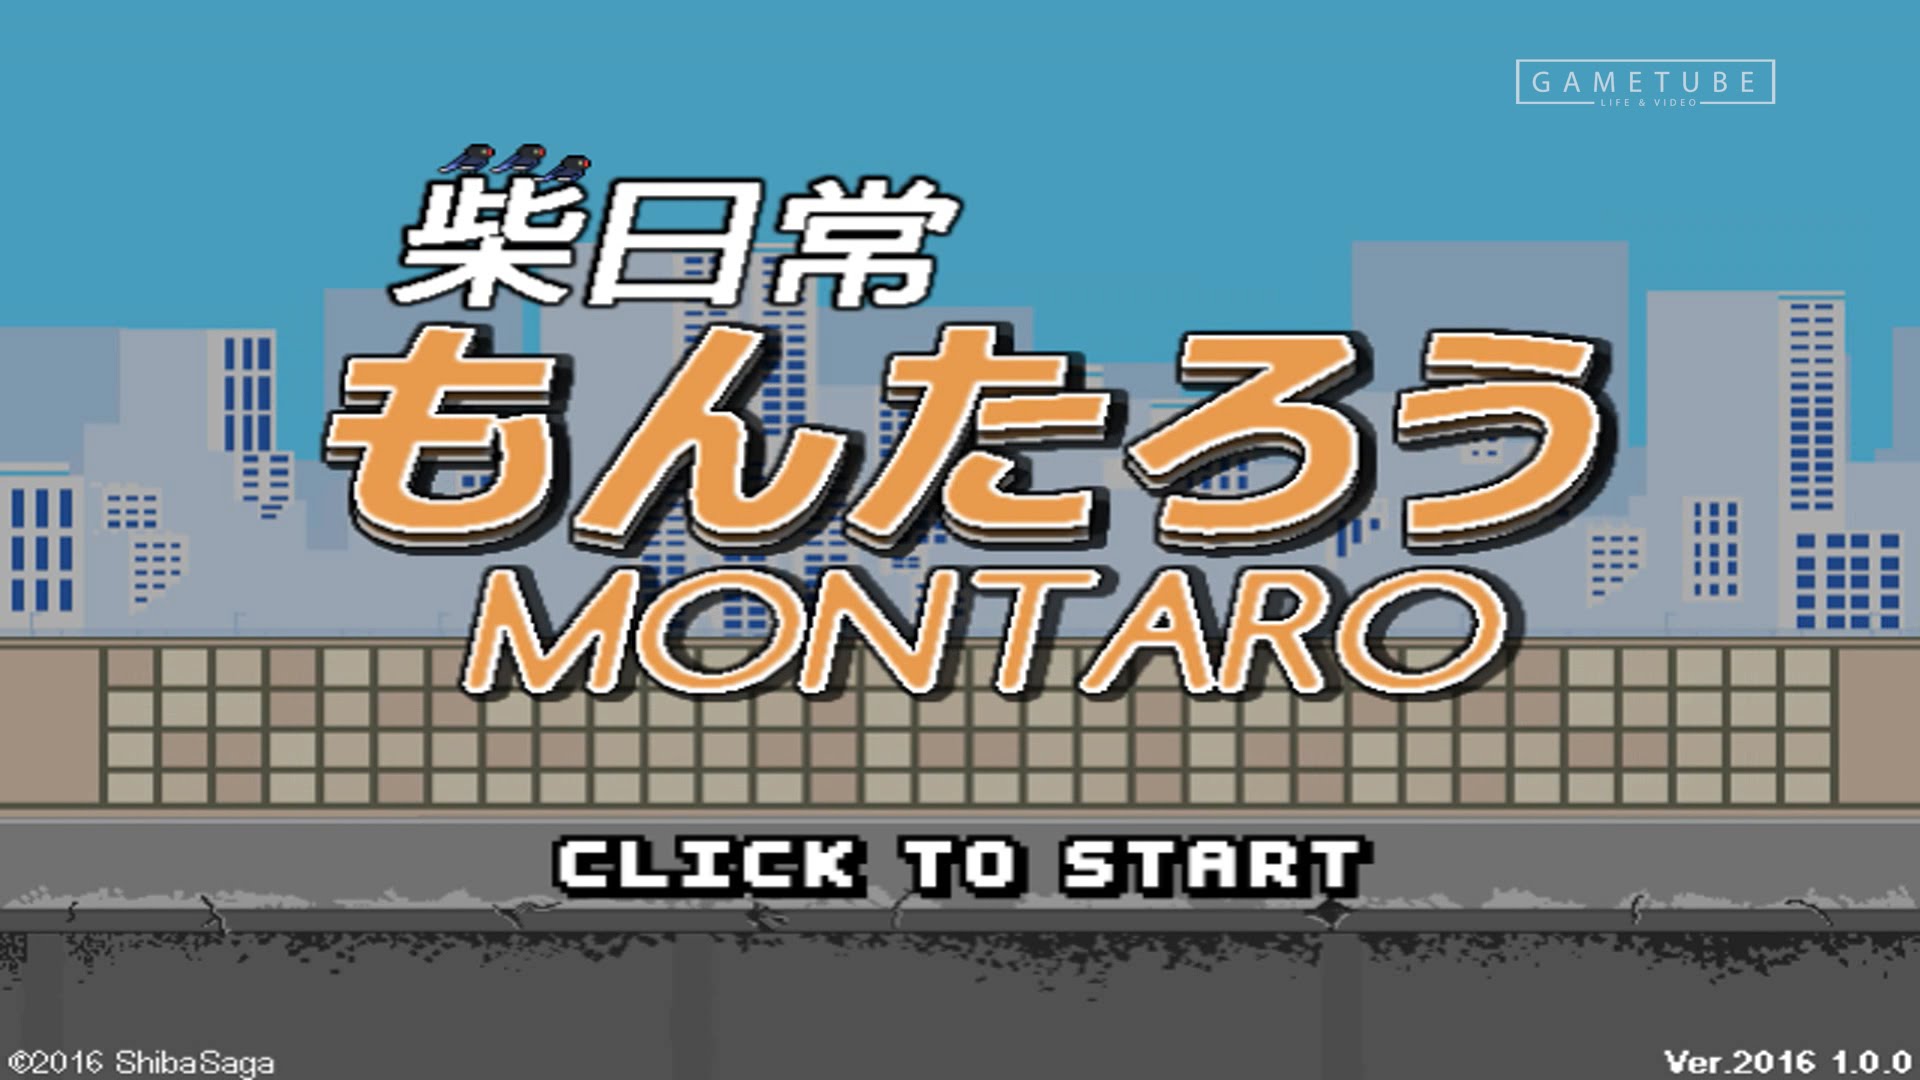 jaquette du jeu vidéo Montaro